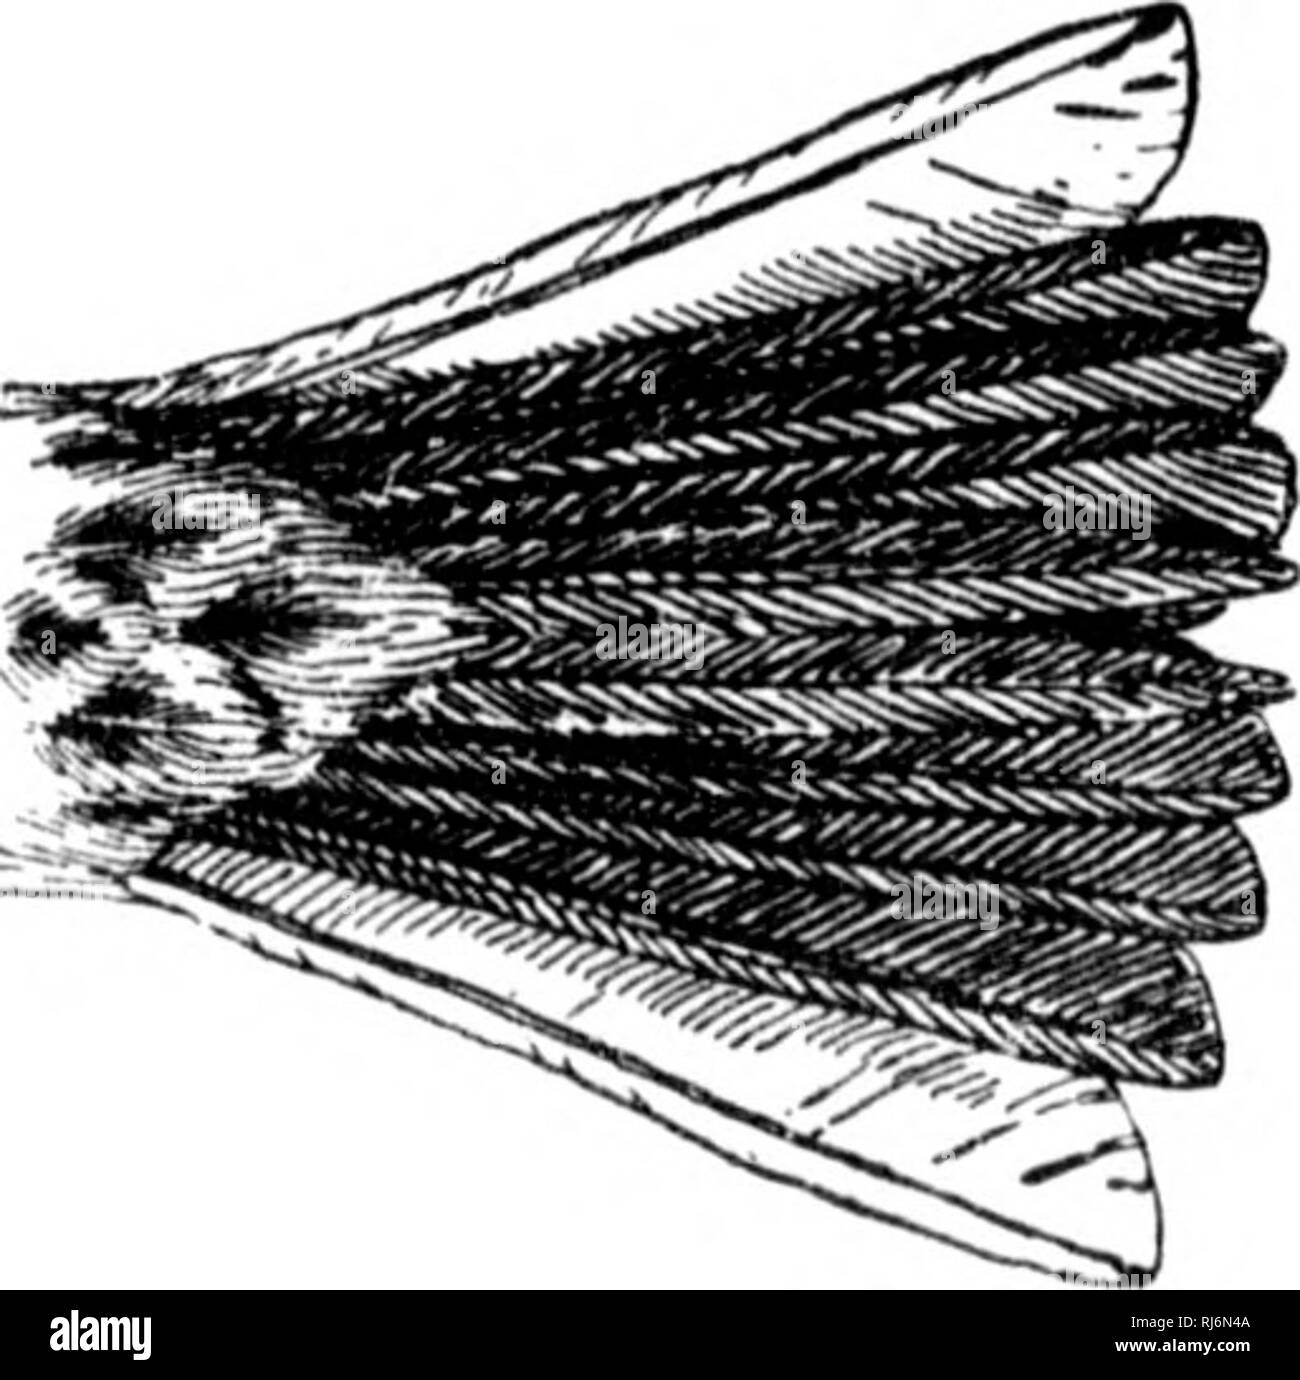 . Las aves de Norteamérica oriental conocidos que se producen al este del meridiano 90° [microforma]. Las aves; aves; Oiseaux; Oiseaux. &Lt; rown y hack, grisáceos o Huffy, con rayas; ishoulder hlaok (arrendador win&LT;? Nifous eoverts), J)rown; hreast, rayada; j2;reater parte de plumas de cola exterior, incluida la web, exterior blanco. Vesper Sparrow. Bay-winged Bunting. Hierba Finch. Pi localiza f/ra))iinpit!i. Ver núm. 40S. Corona y espalda, apizarradas o aburrido, marrón pardo rufo ; las nalgas y la parte superior de la cara sur- las plumas de la cola, luz pardo rufo; unchn-piezas, rayas lieavily wliite, anil manchadas en hreast y lados Foto de stock